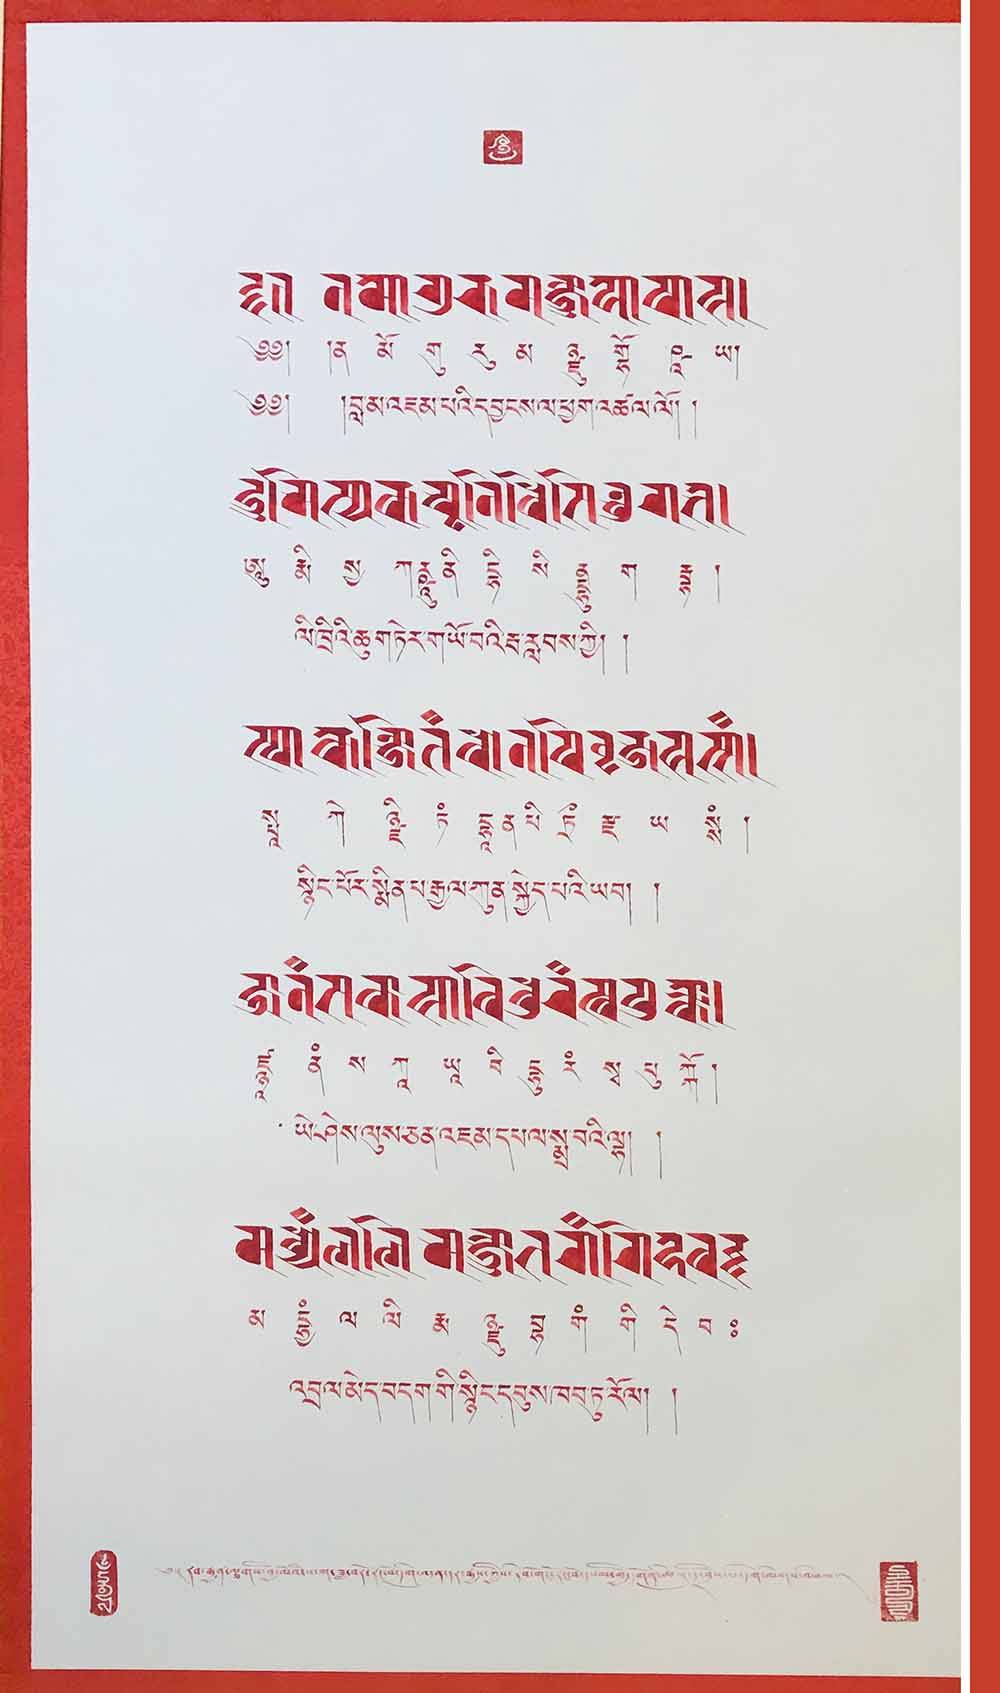 藏文萨迦格言 全集图片